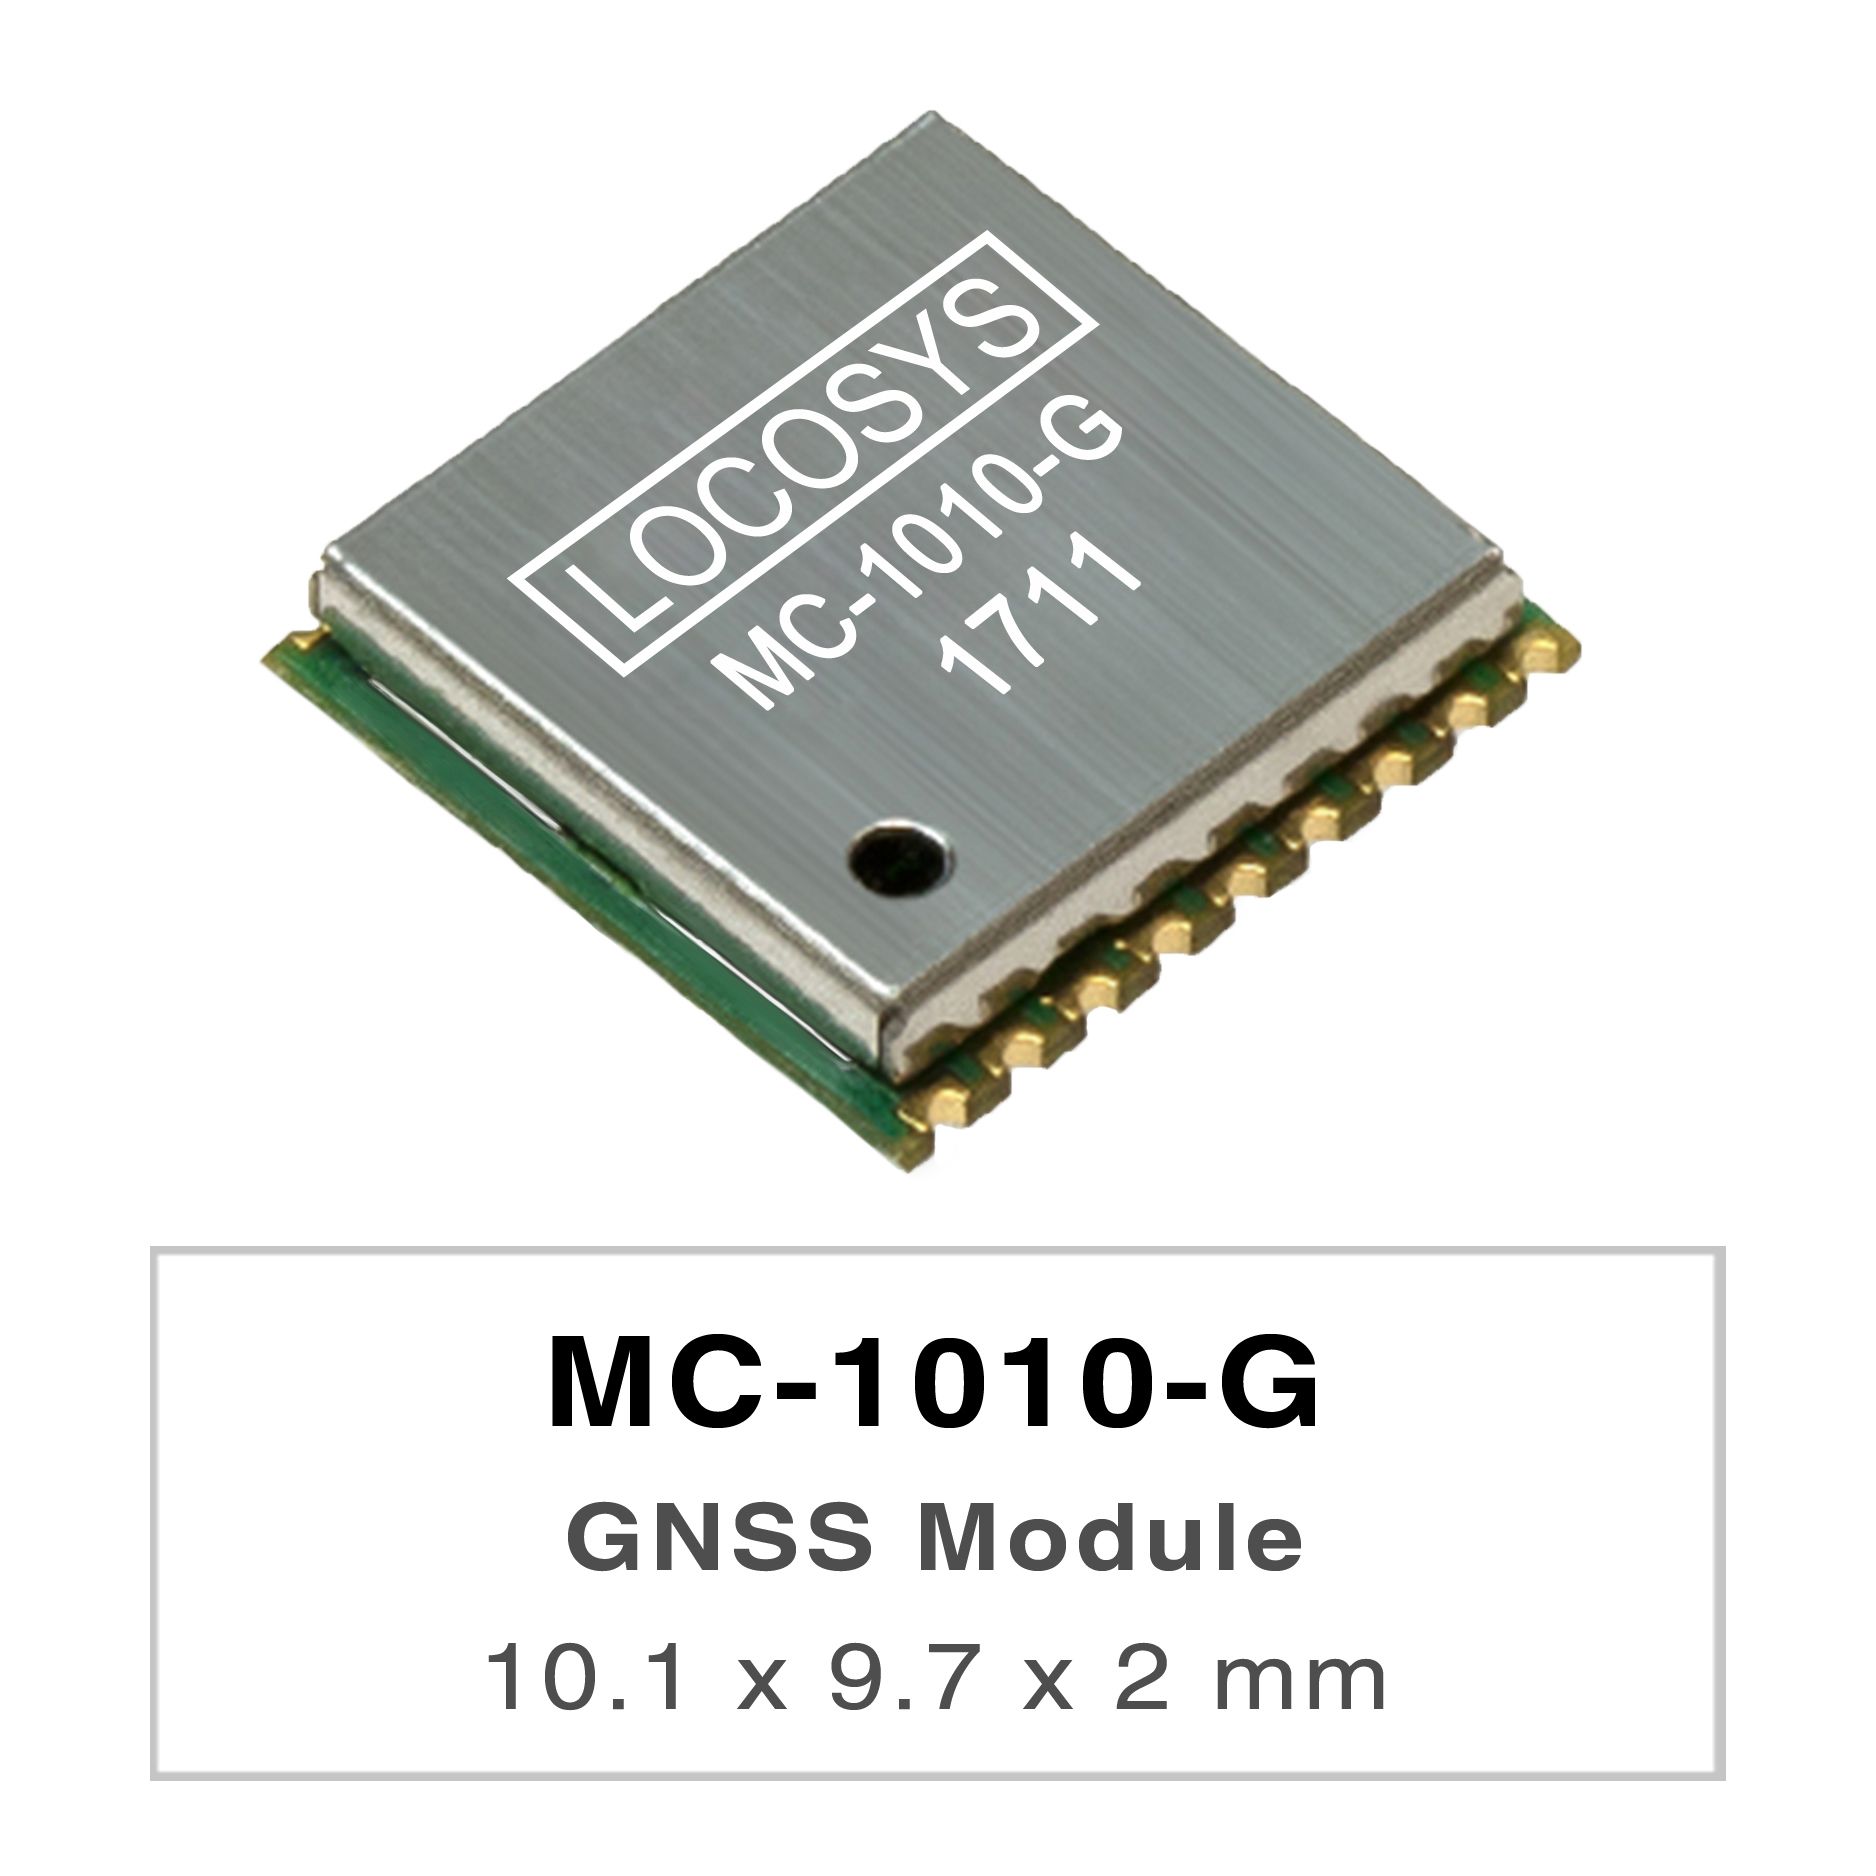 LOCOSYS MC-1010-G ist ein komplettes eigenständiges GNSS-Modul.